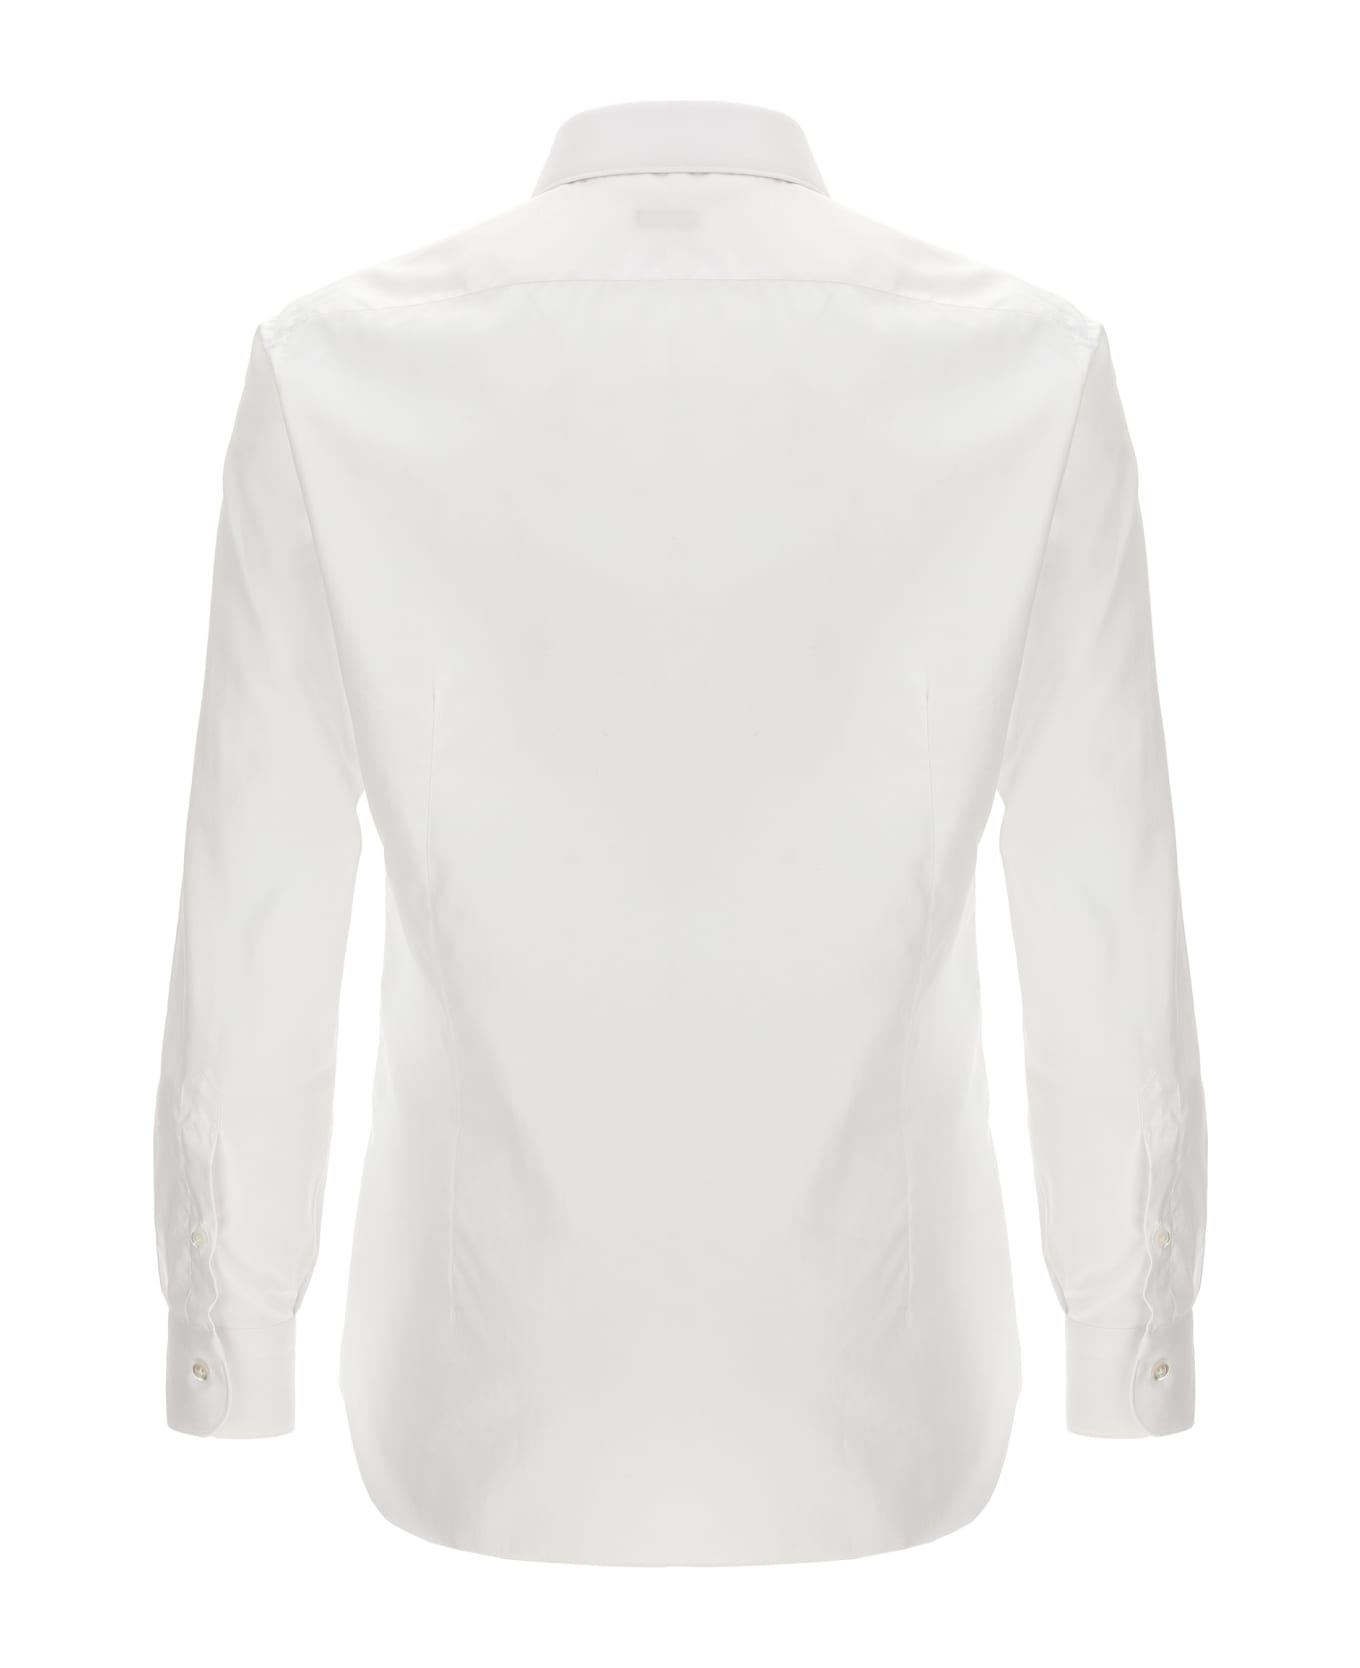 Barba Napoli Textured Cotton Shirt - White